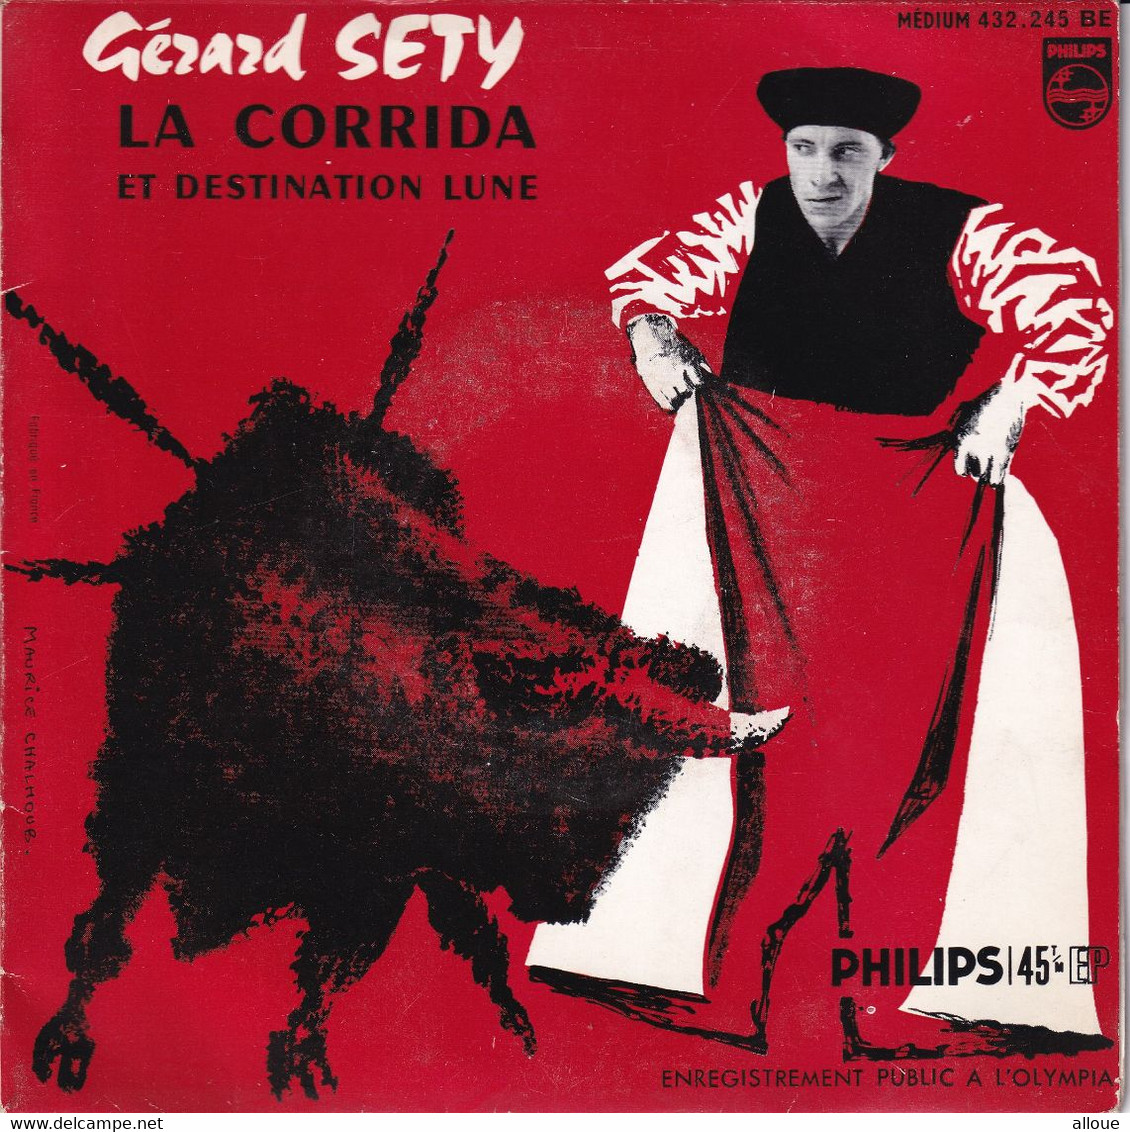 GERARD SETY - FR EP - LA CORRIDA ET DESTINATION LUNE - Comiche